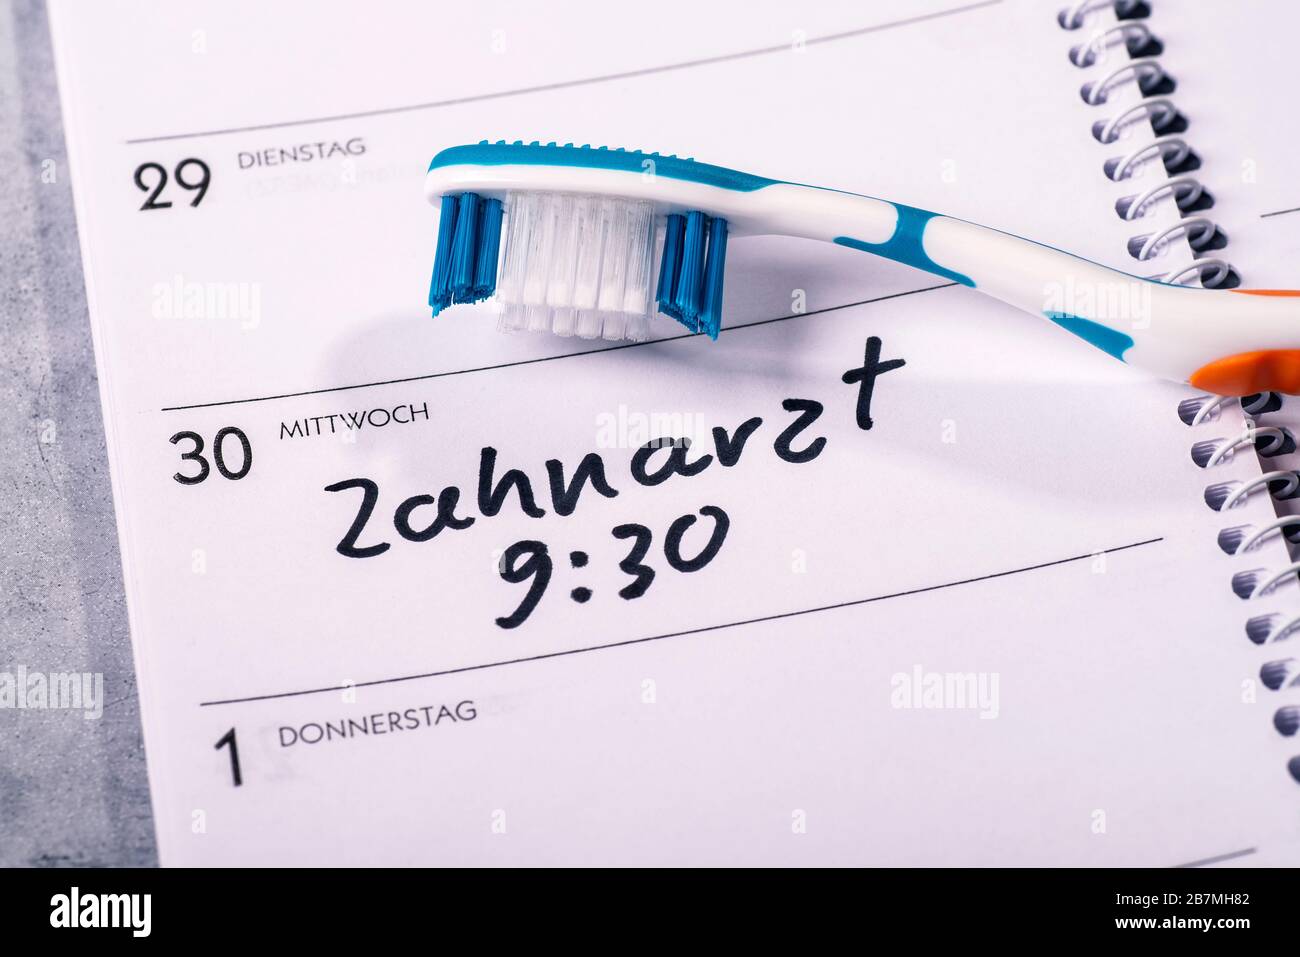 Kalender, auf dem eine Zahnbürste platziert wird und in den ein Termin für einen Zahnarztbesuch eingetragen ist Stockfoto